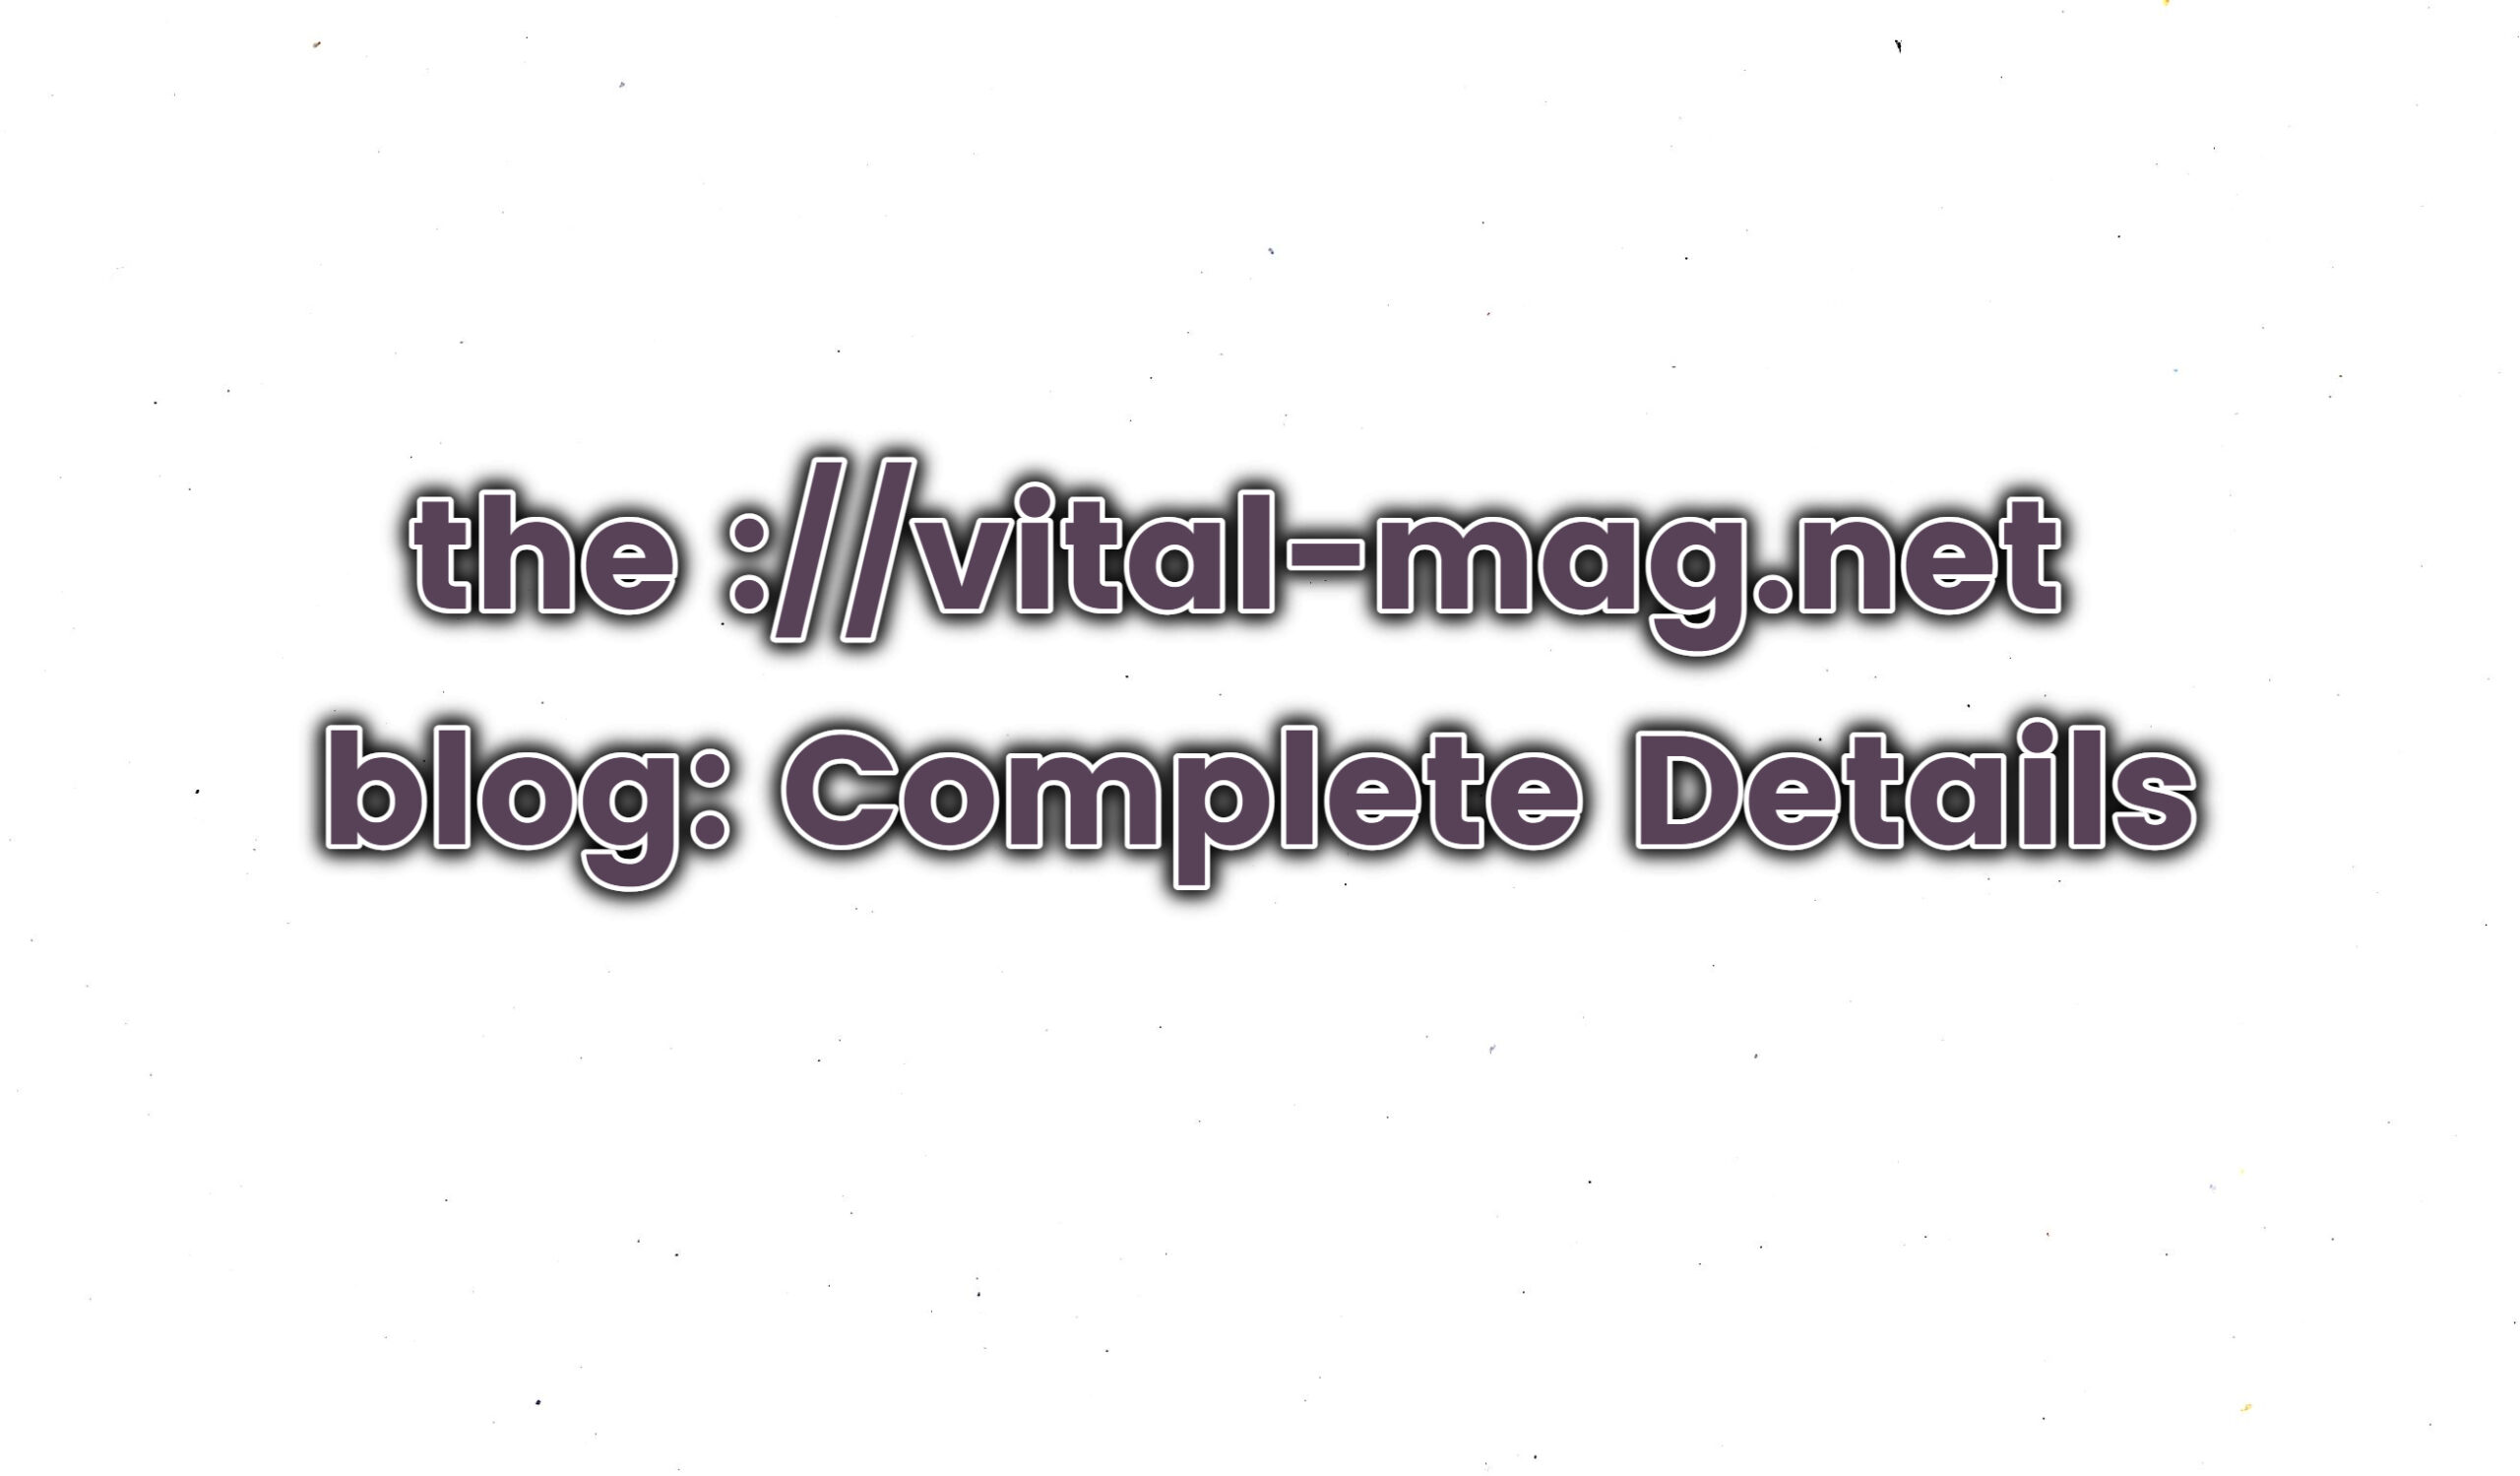 the ://vital-mag.net blog: Complete Details